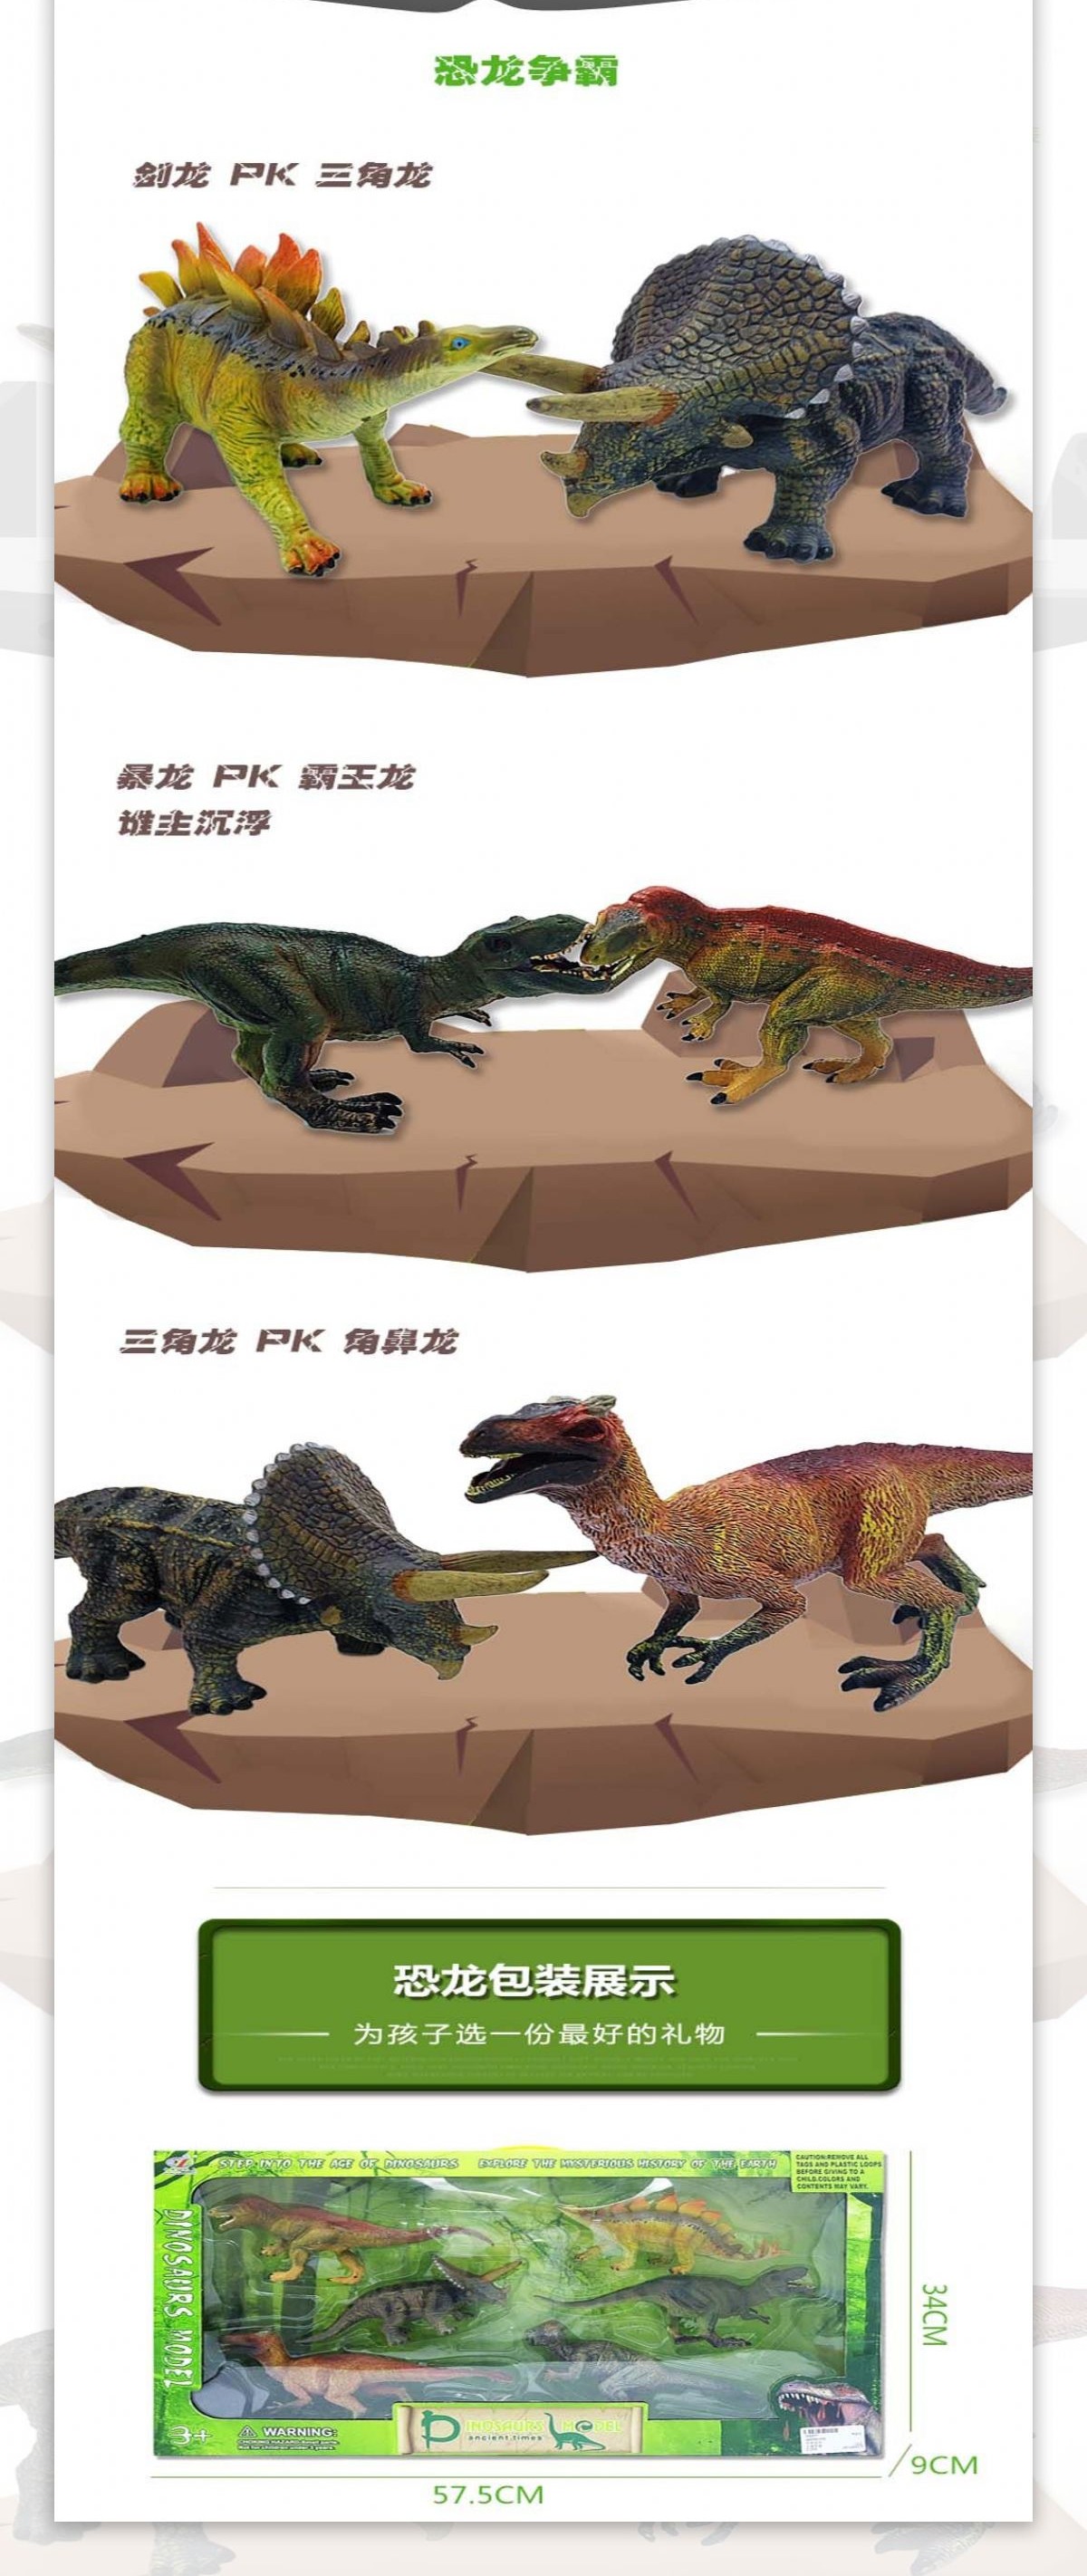 恐龙详情页模版设计描述